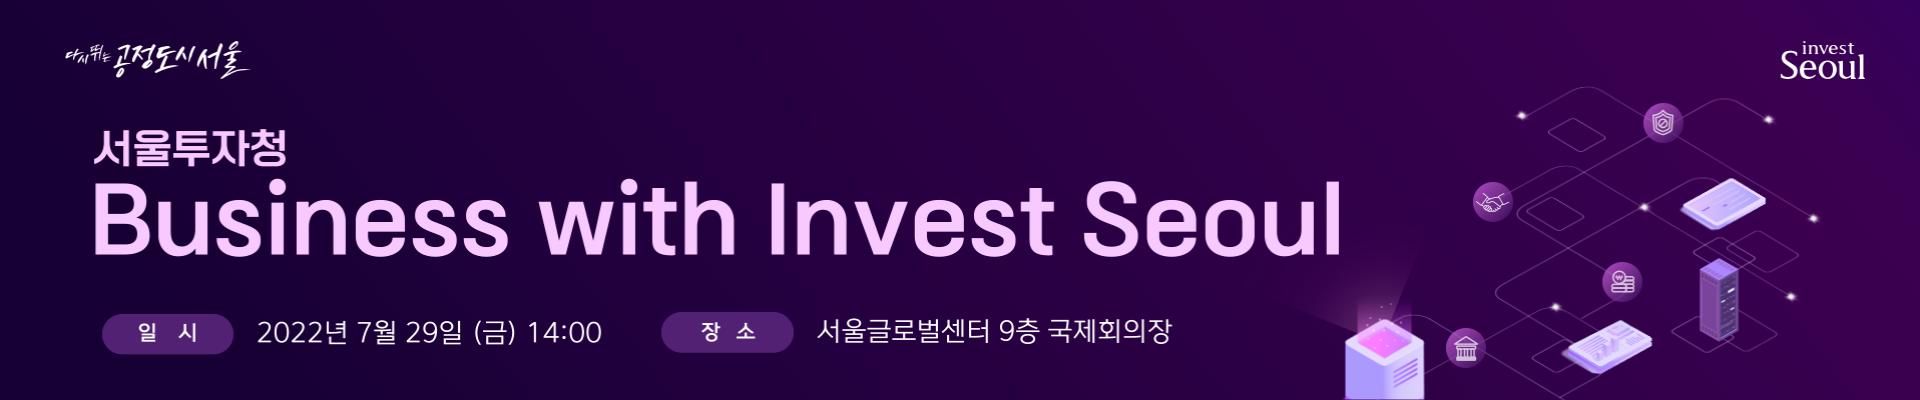 서울투자청 Business with Invest Seoul